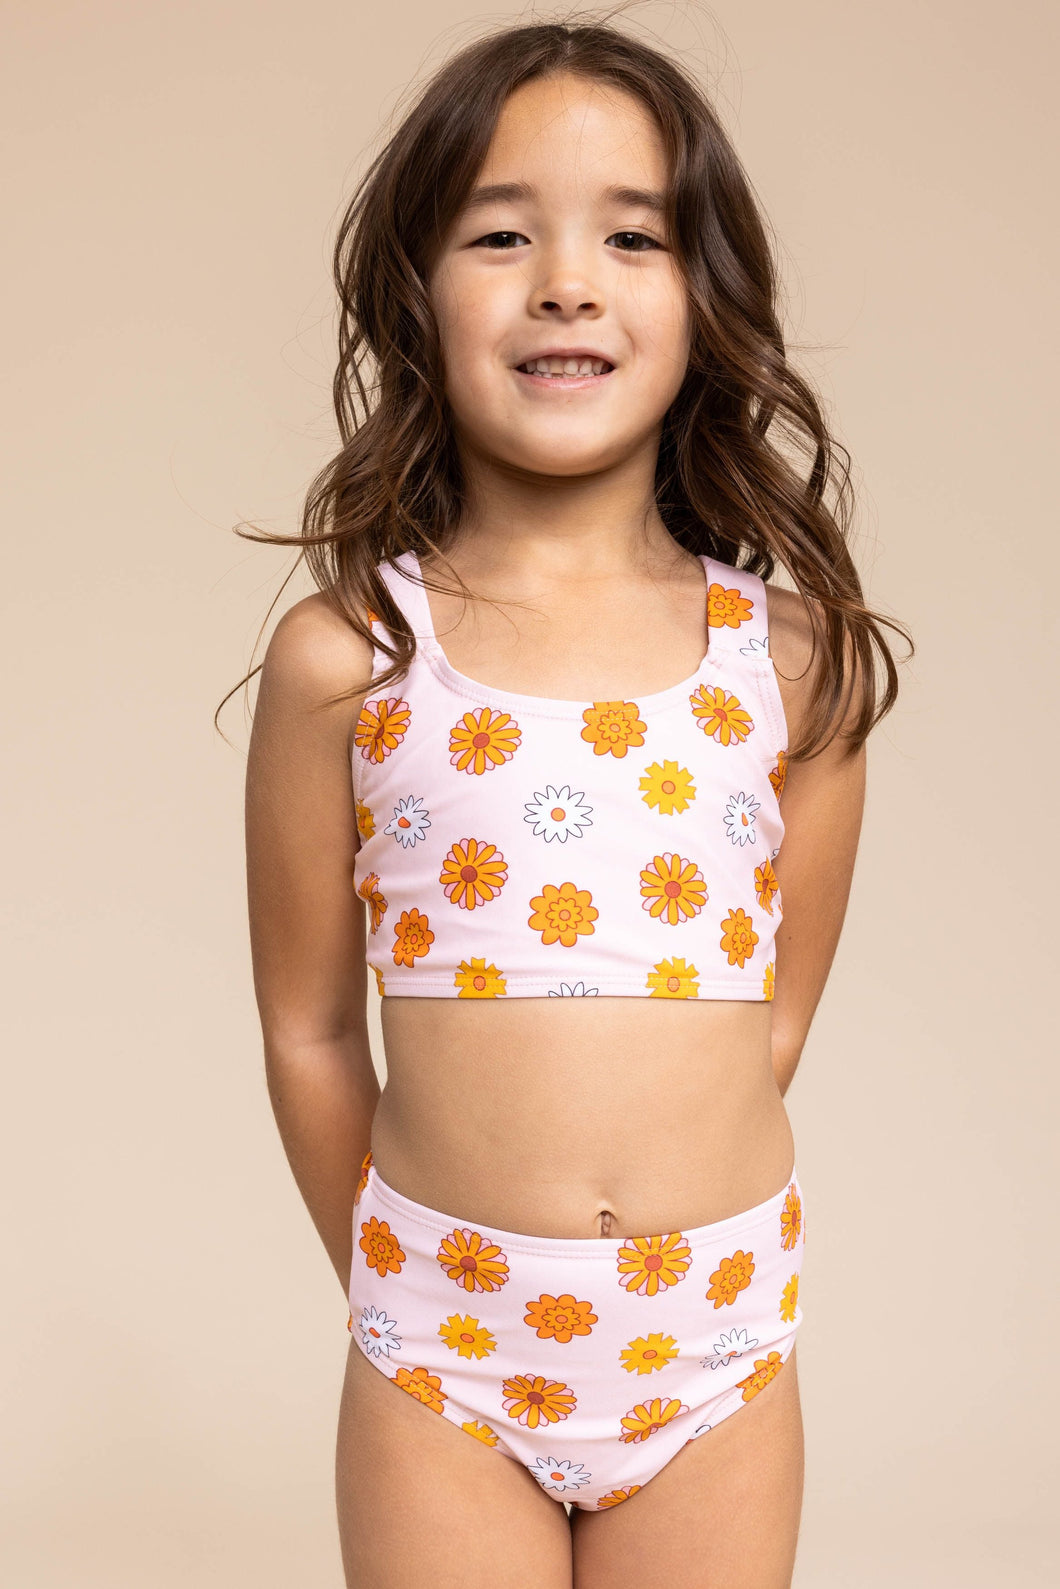 ROCO SWIM | Girl's Basic Bikini | Yellow/Orange Floral